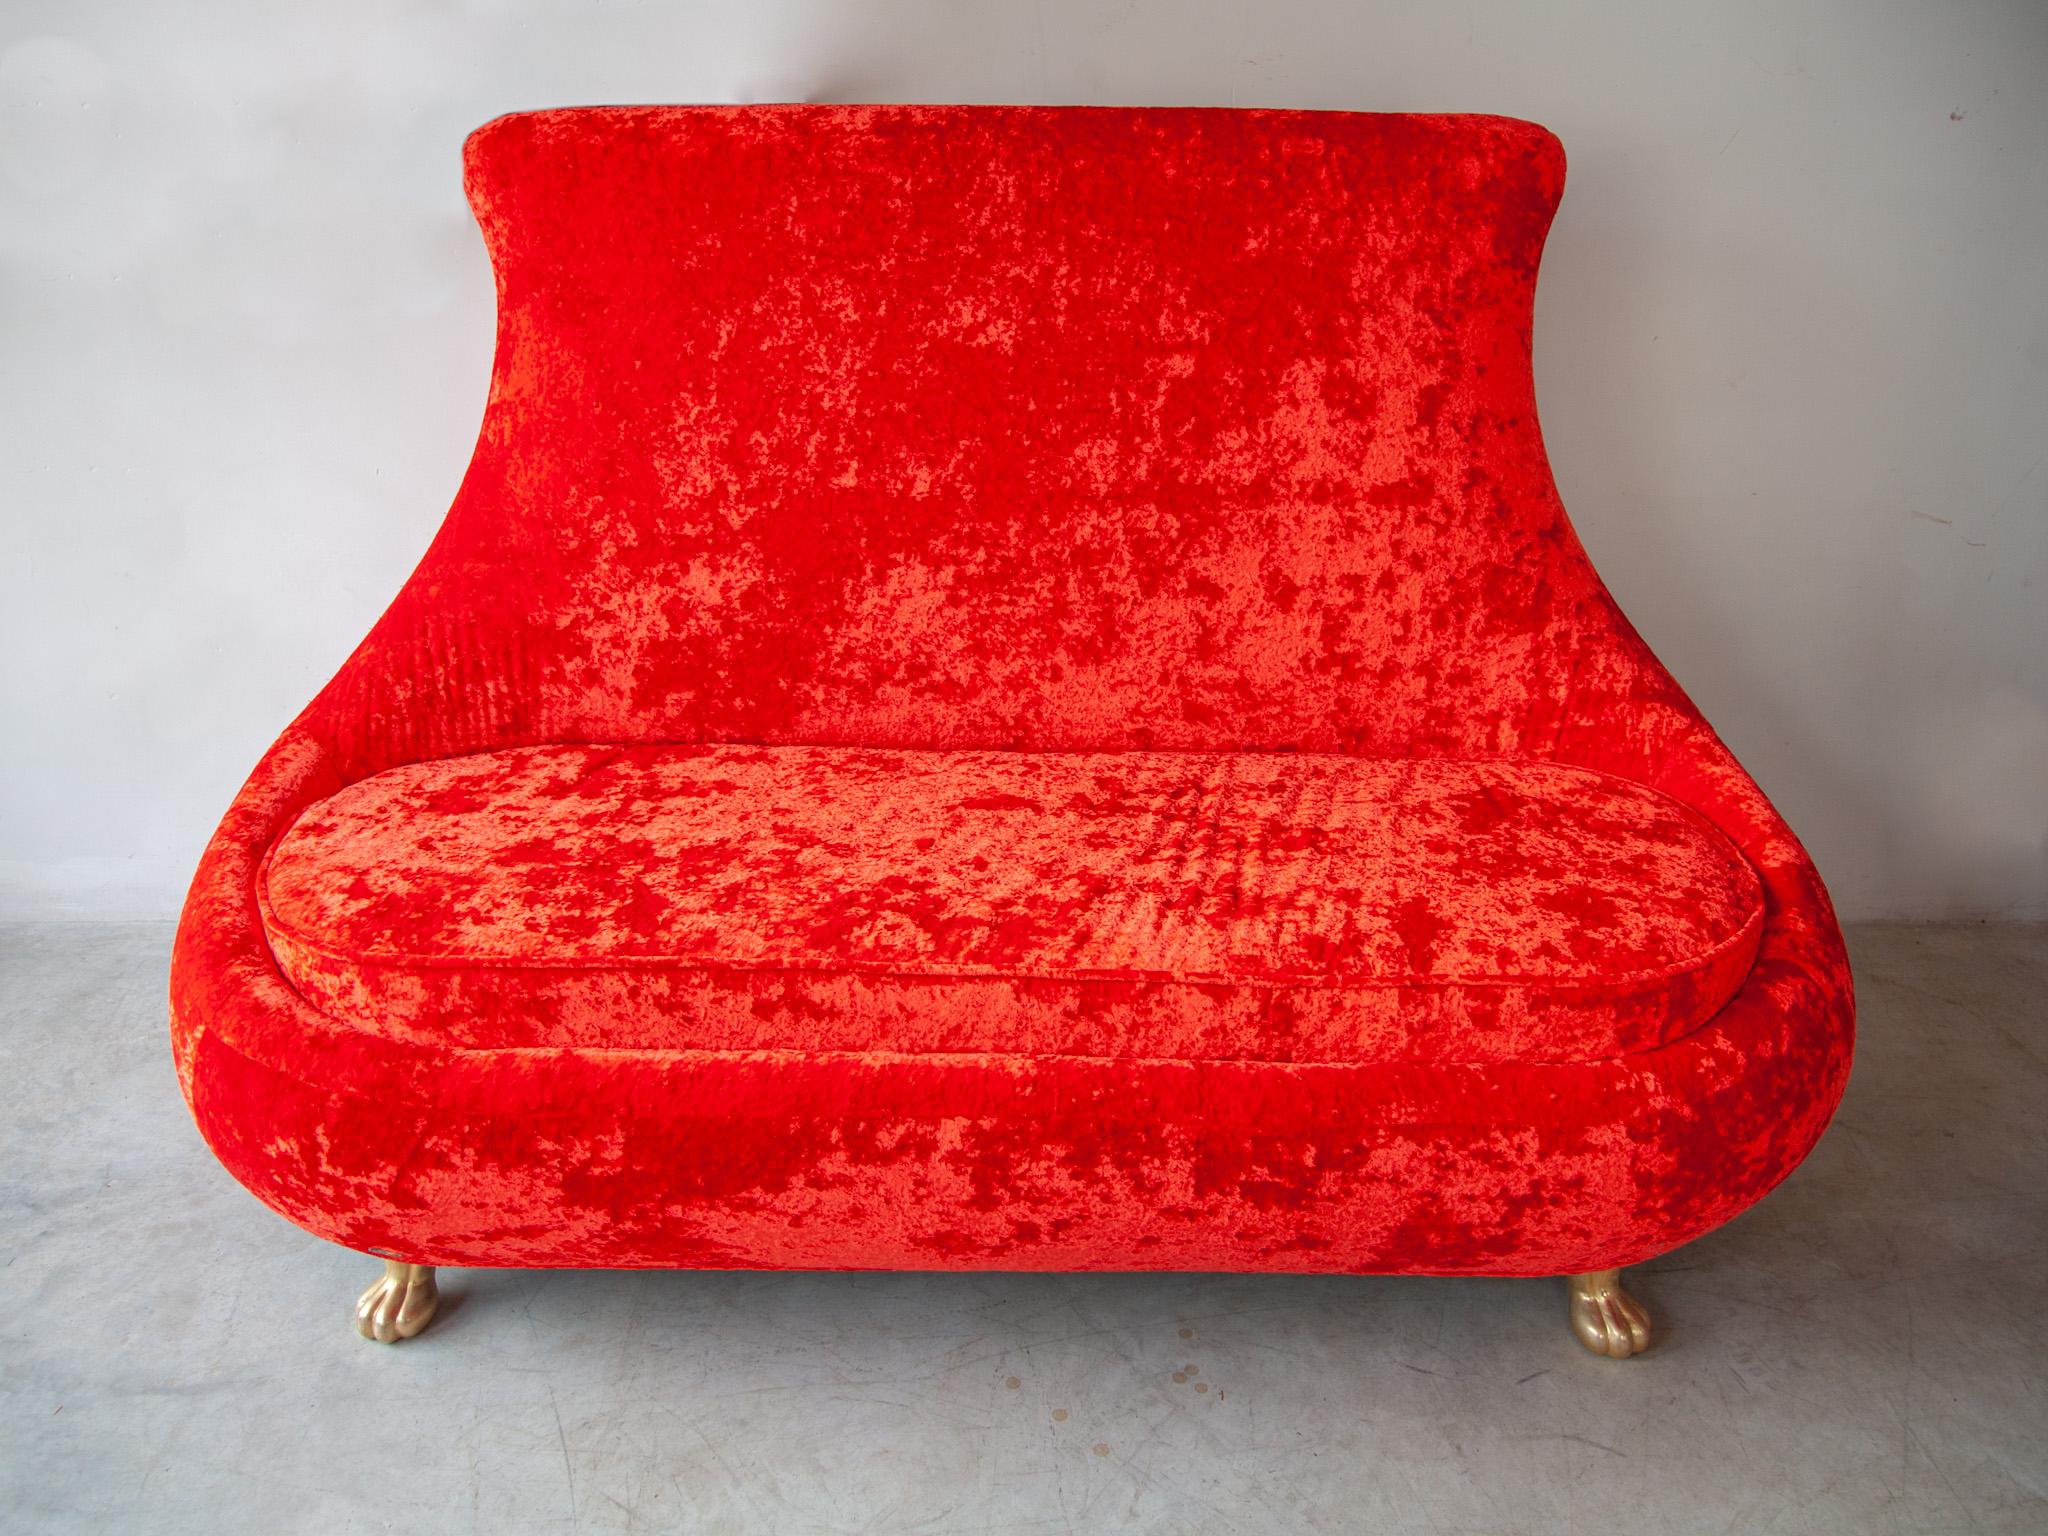 Vintage Sofa, Sessel ikonischen Design handgefertigt von deutschen Firma Bretz, in sehr gutem Zustand. Die Farbe ist rot mit Samtpolsterung und gehört zur Ikonenserie Gaudì. Zusammen mit dem Sofa ist auch ein Set aus zwei Sesseln erhältlich, das